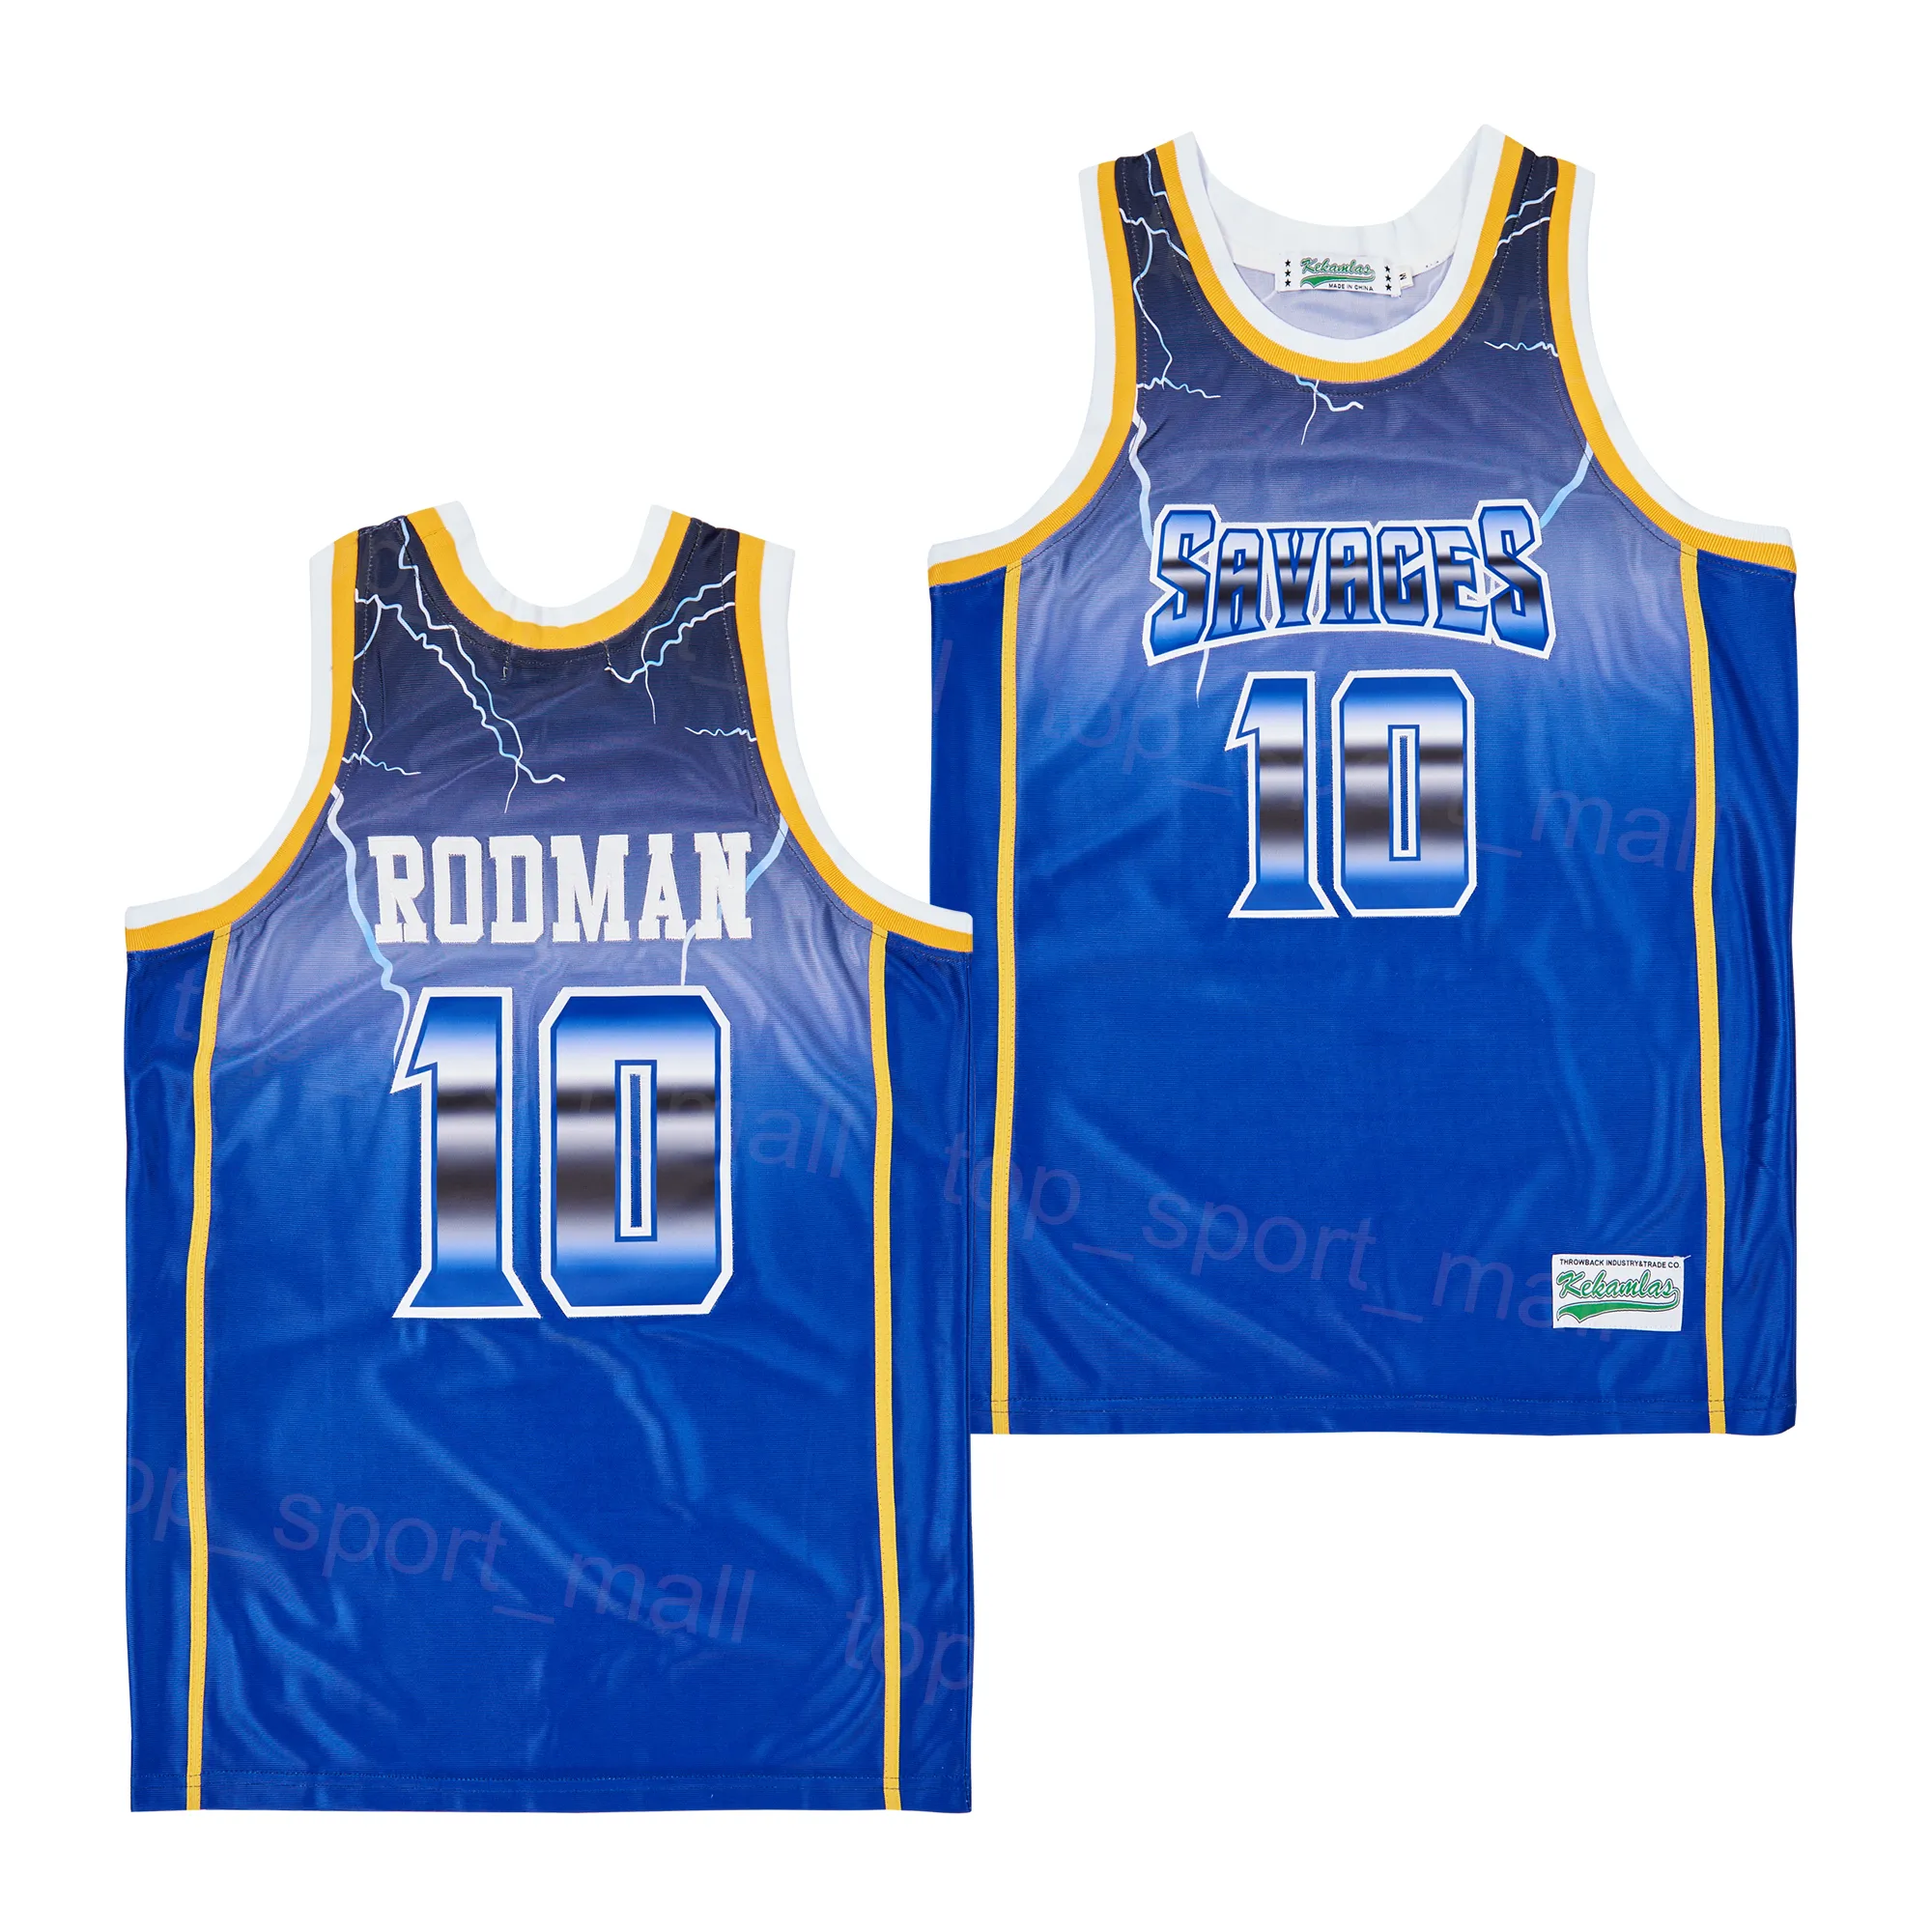 Movie Basketball Dennis Rodman Jersey 10 Fruytful Saygenges of David Summer Hiphop High School Brodery University for Sport Fans Vintage Team Color Blue Shirt